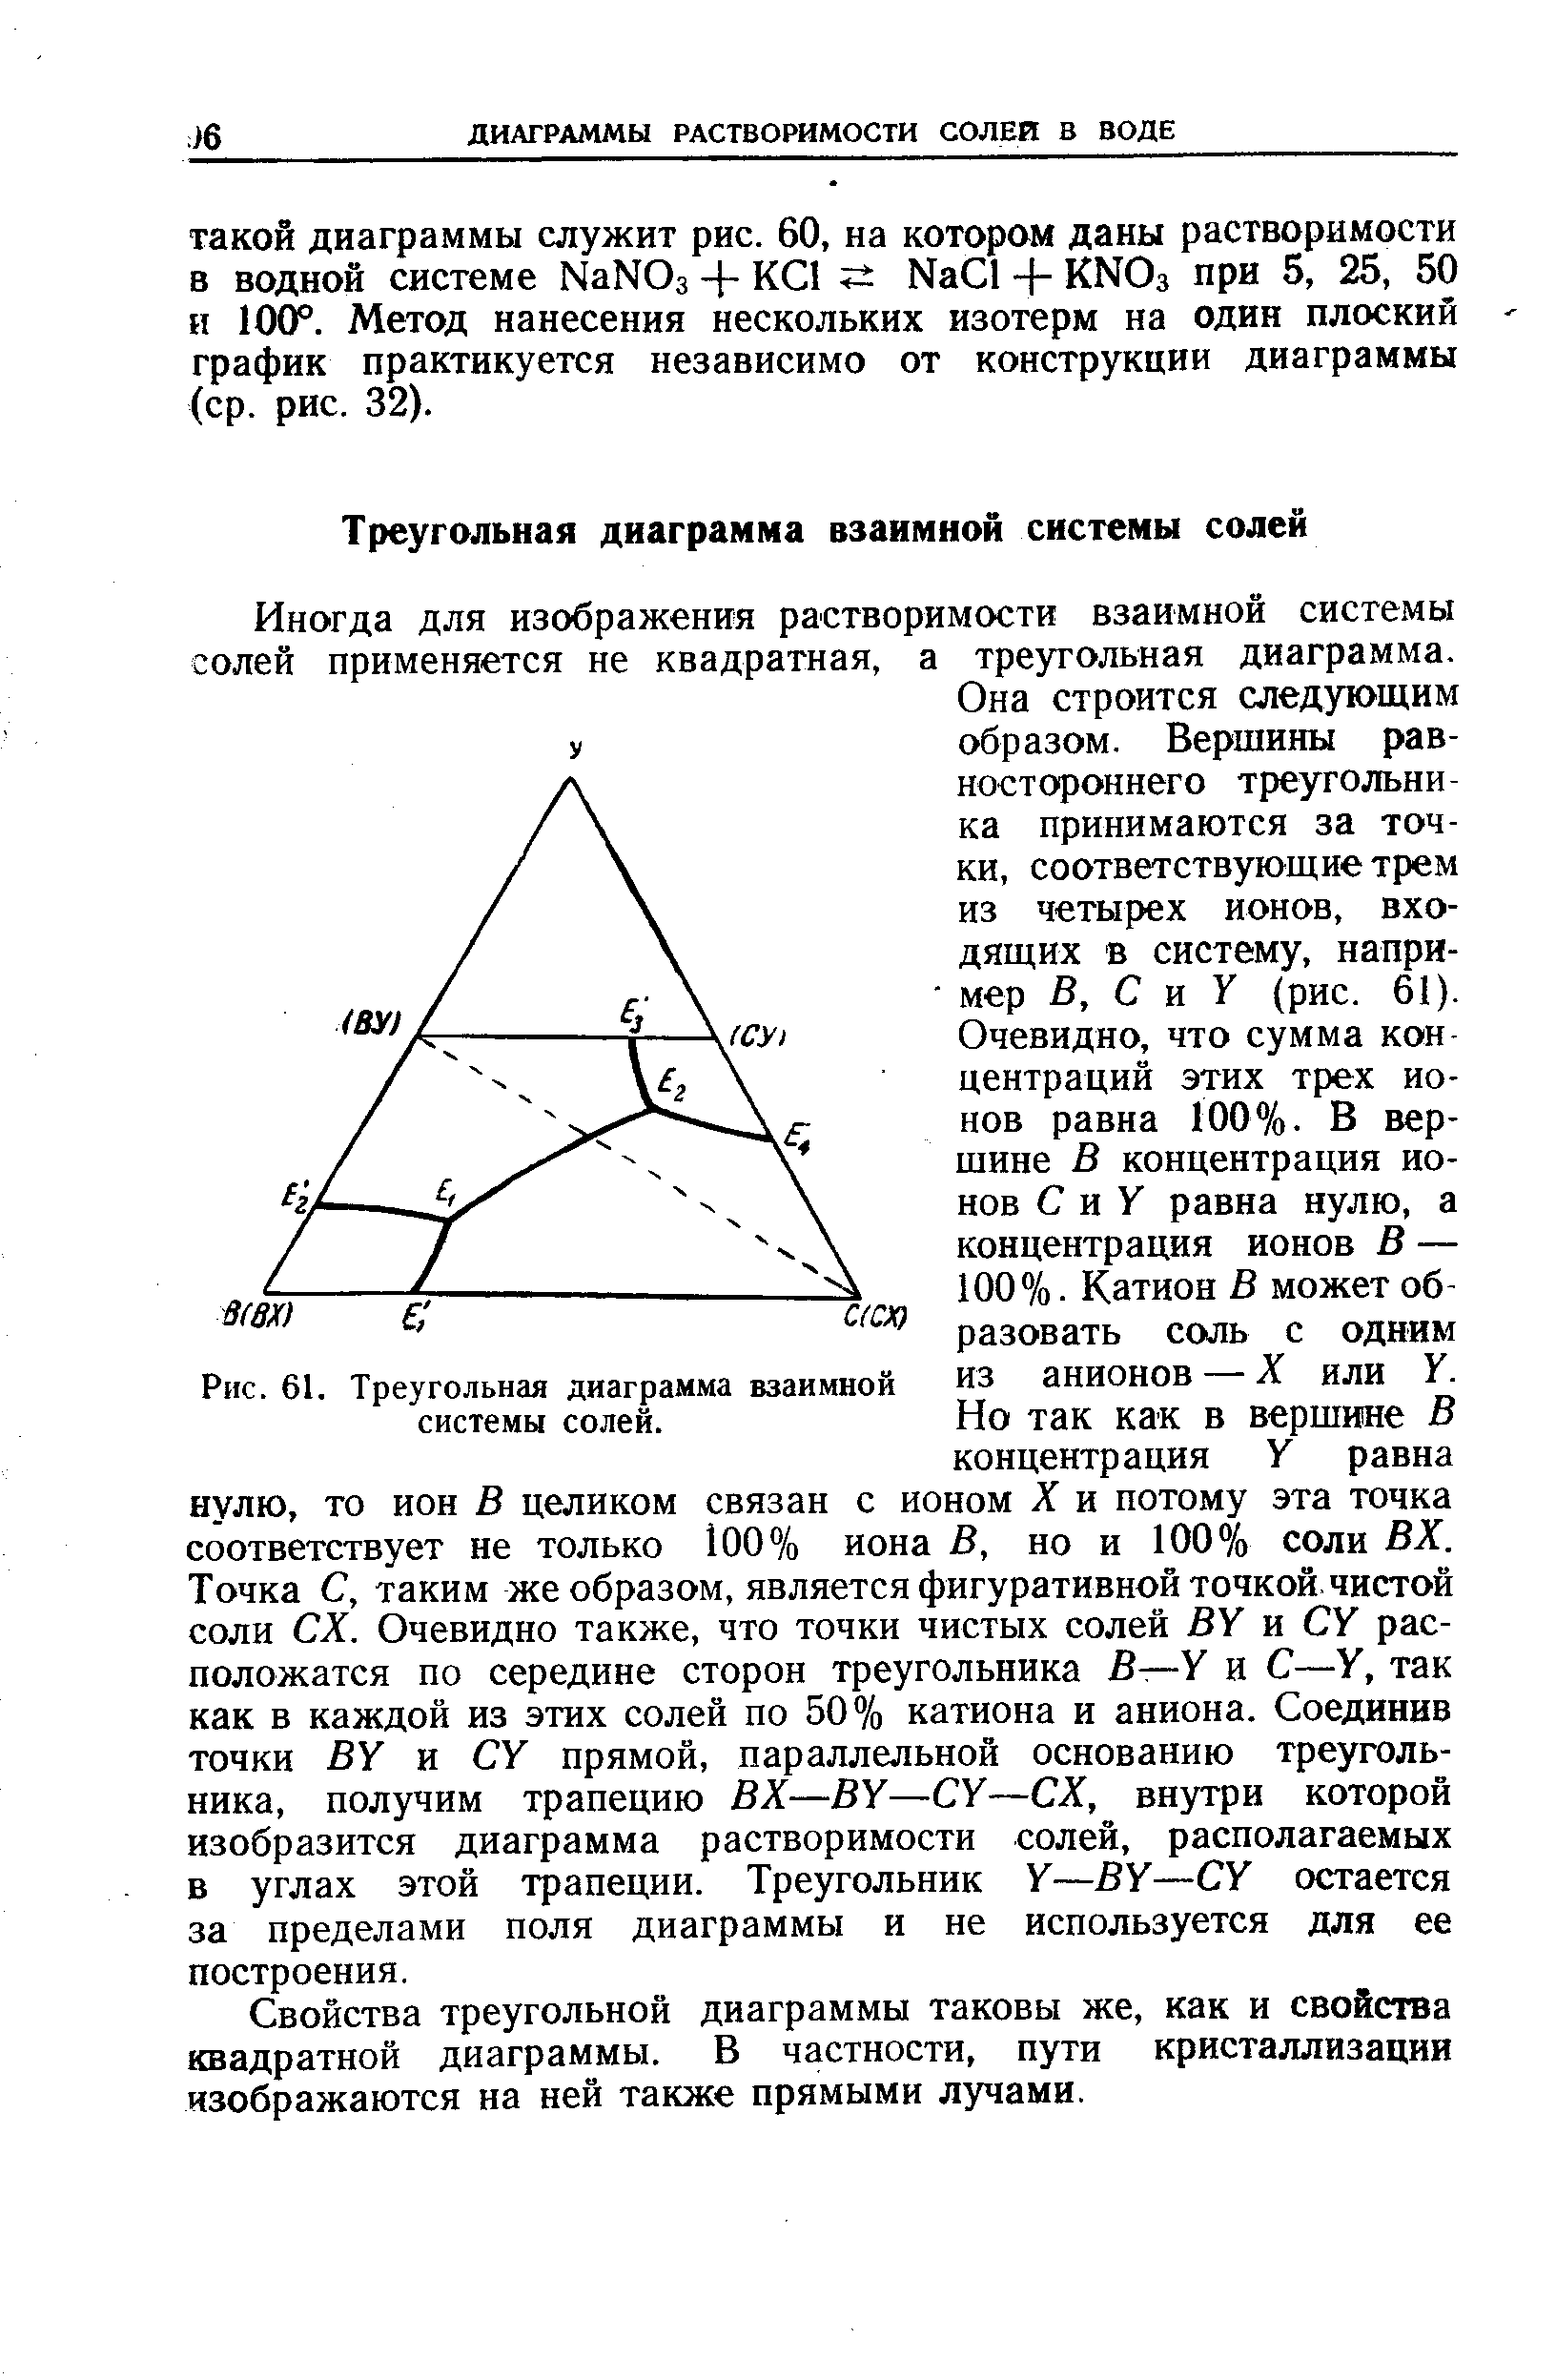 Иногда для изображения растворимости взаимной системы солей применяется не квадратная, а треугольная диаграмма.